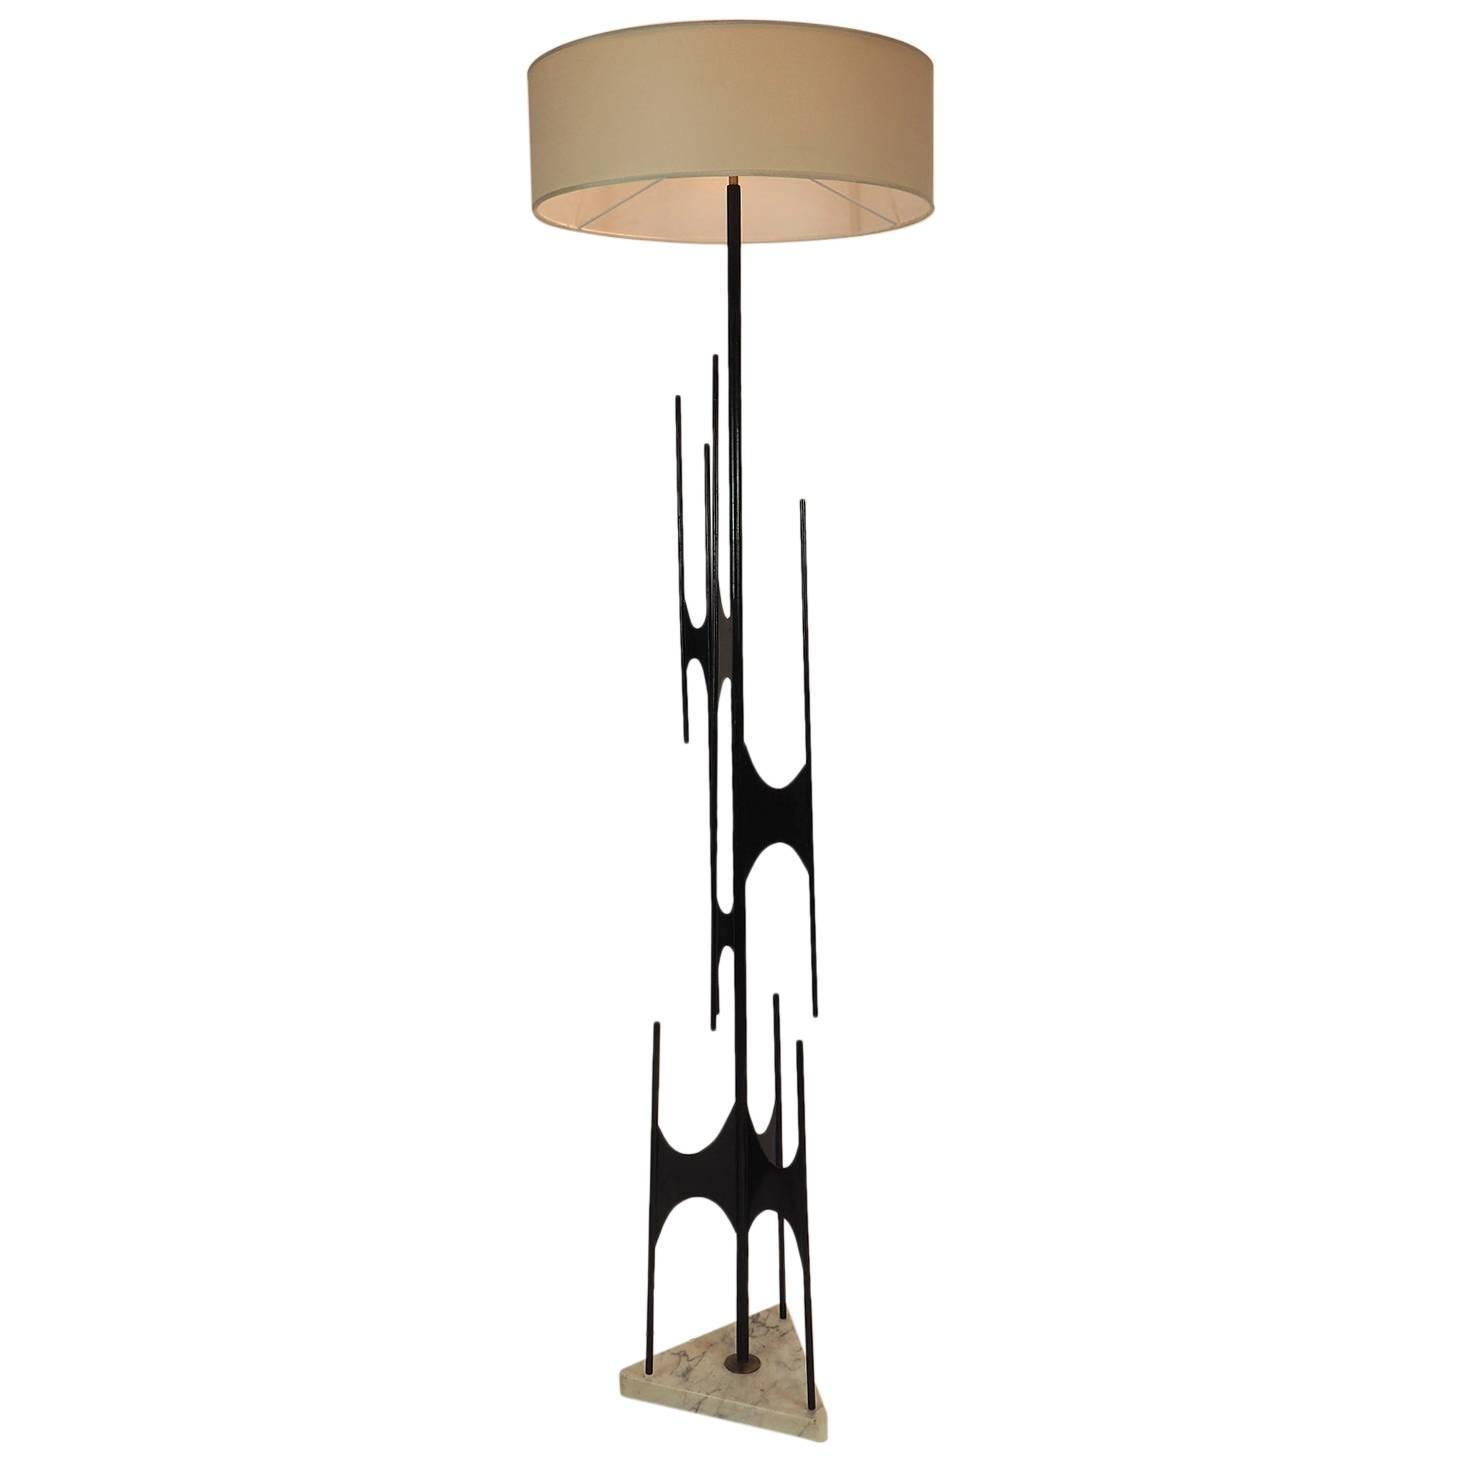 Rare Floor Lamp Designed by Maurizio Tempestini for X Triennale in Milano, 1954